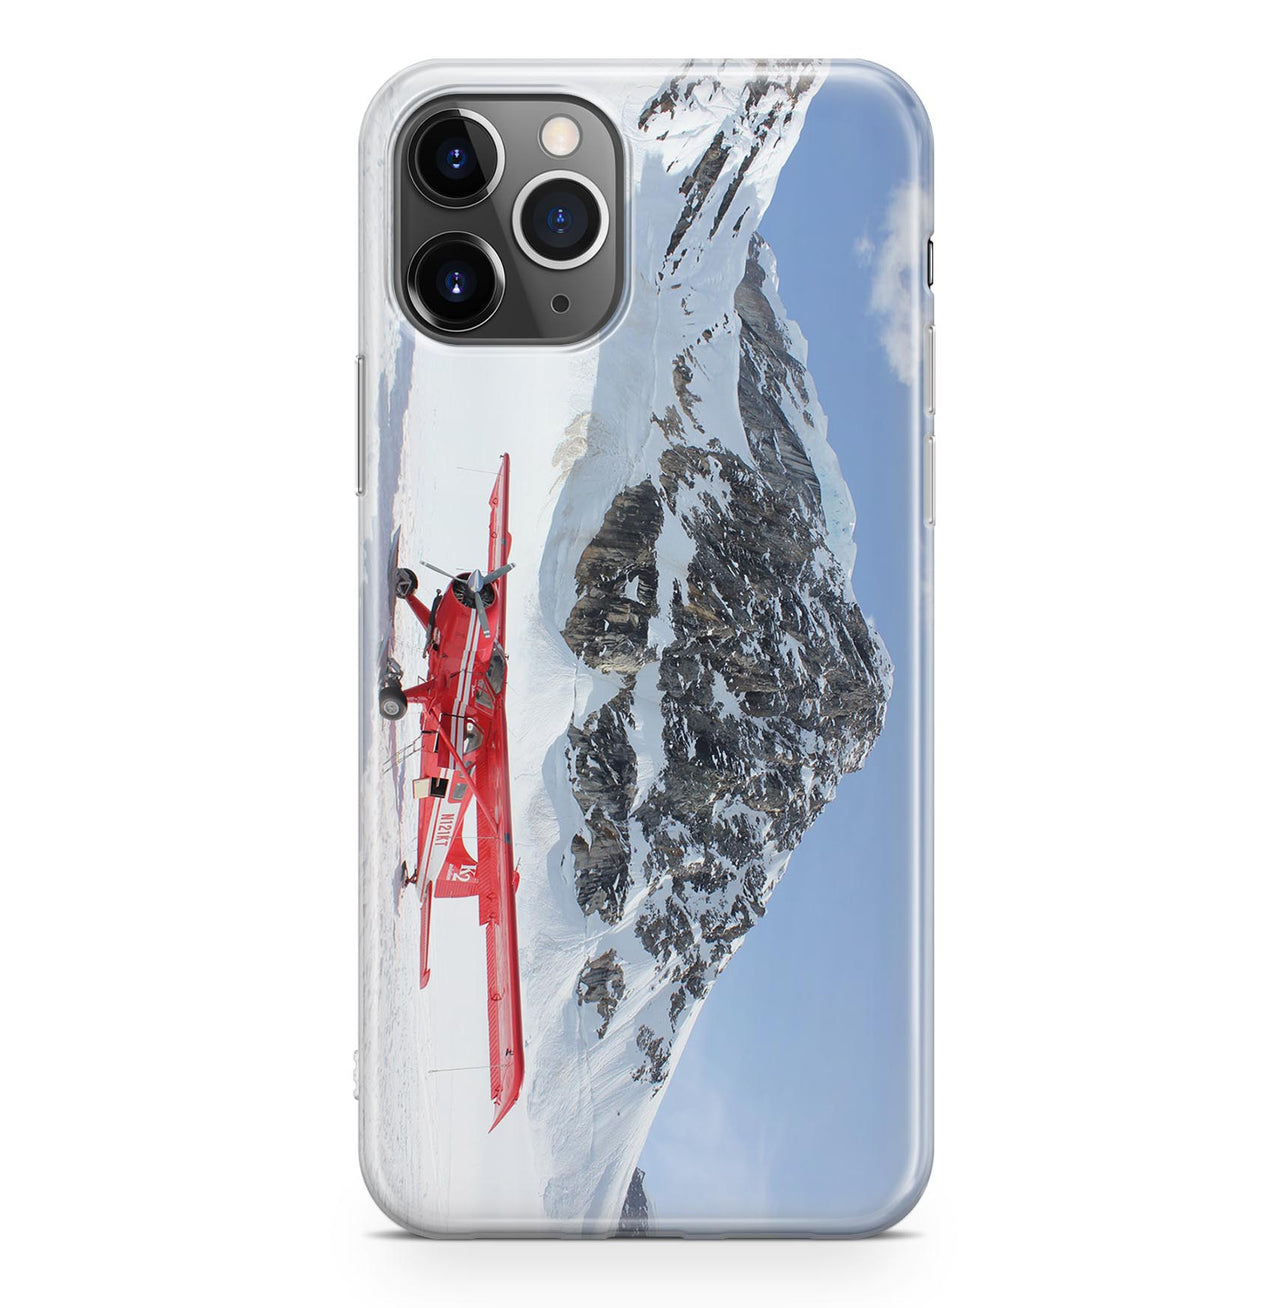 Amazing Snow Airplane Designed iPhone Cases